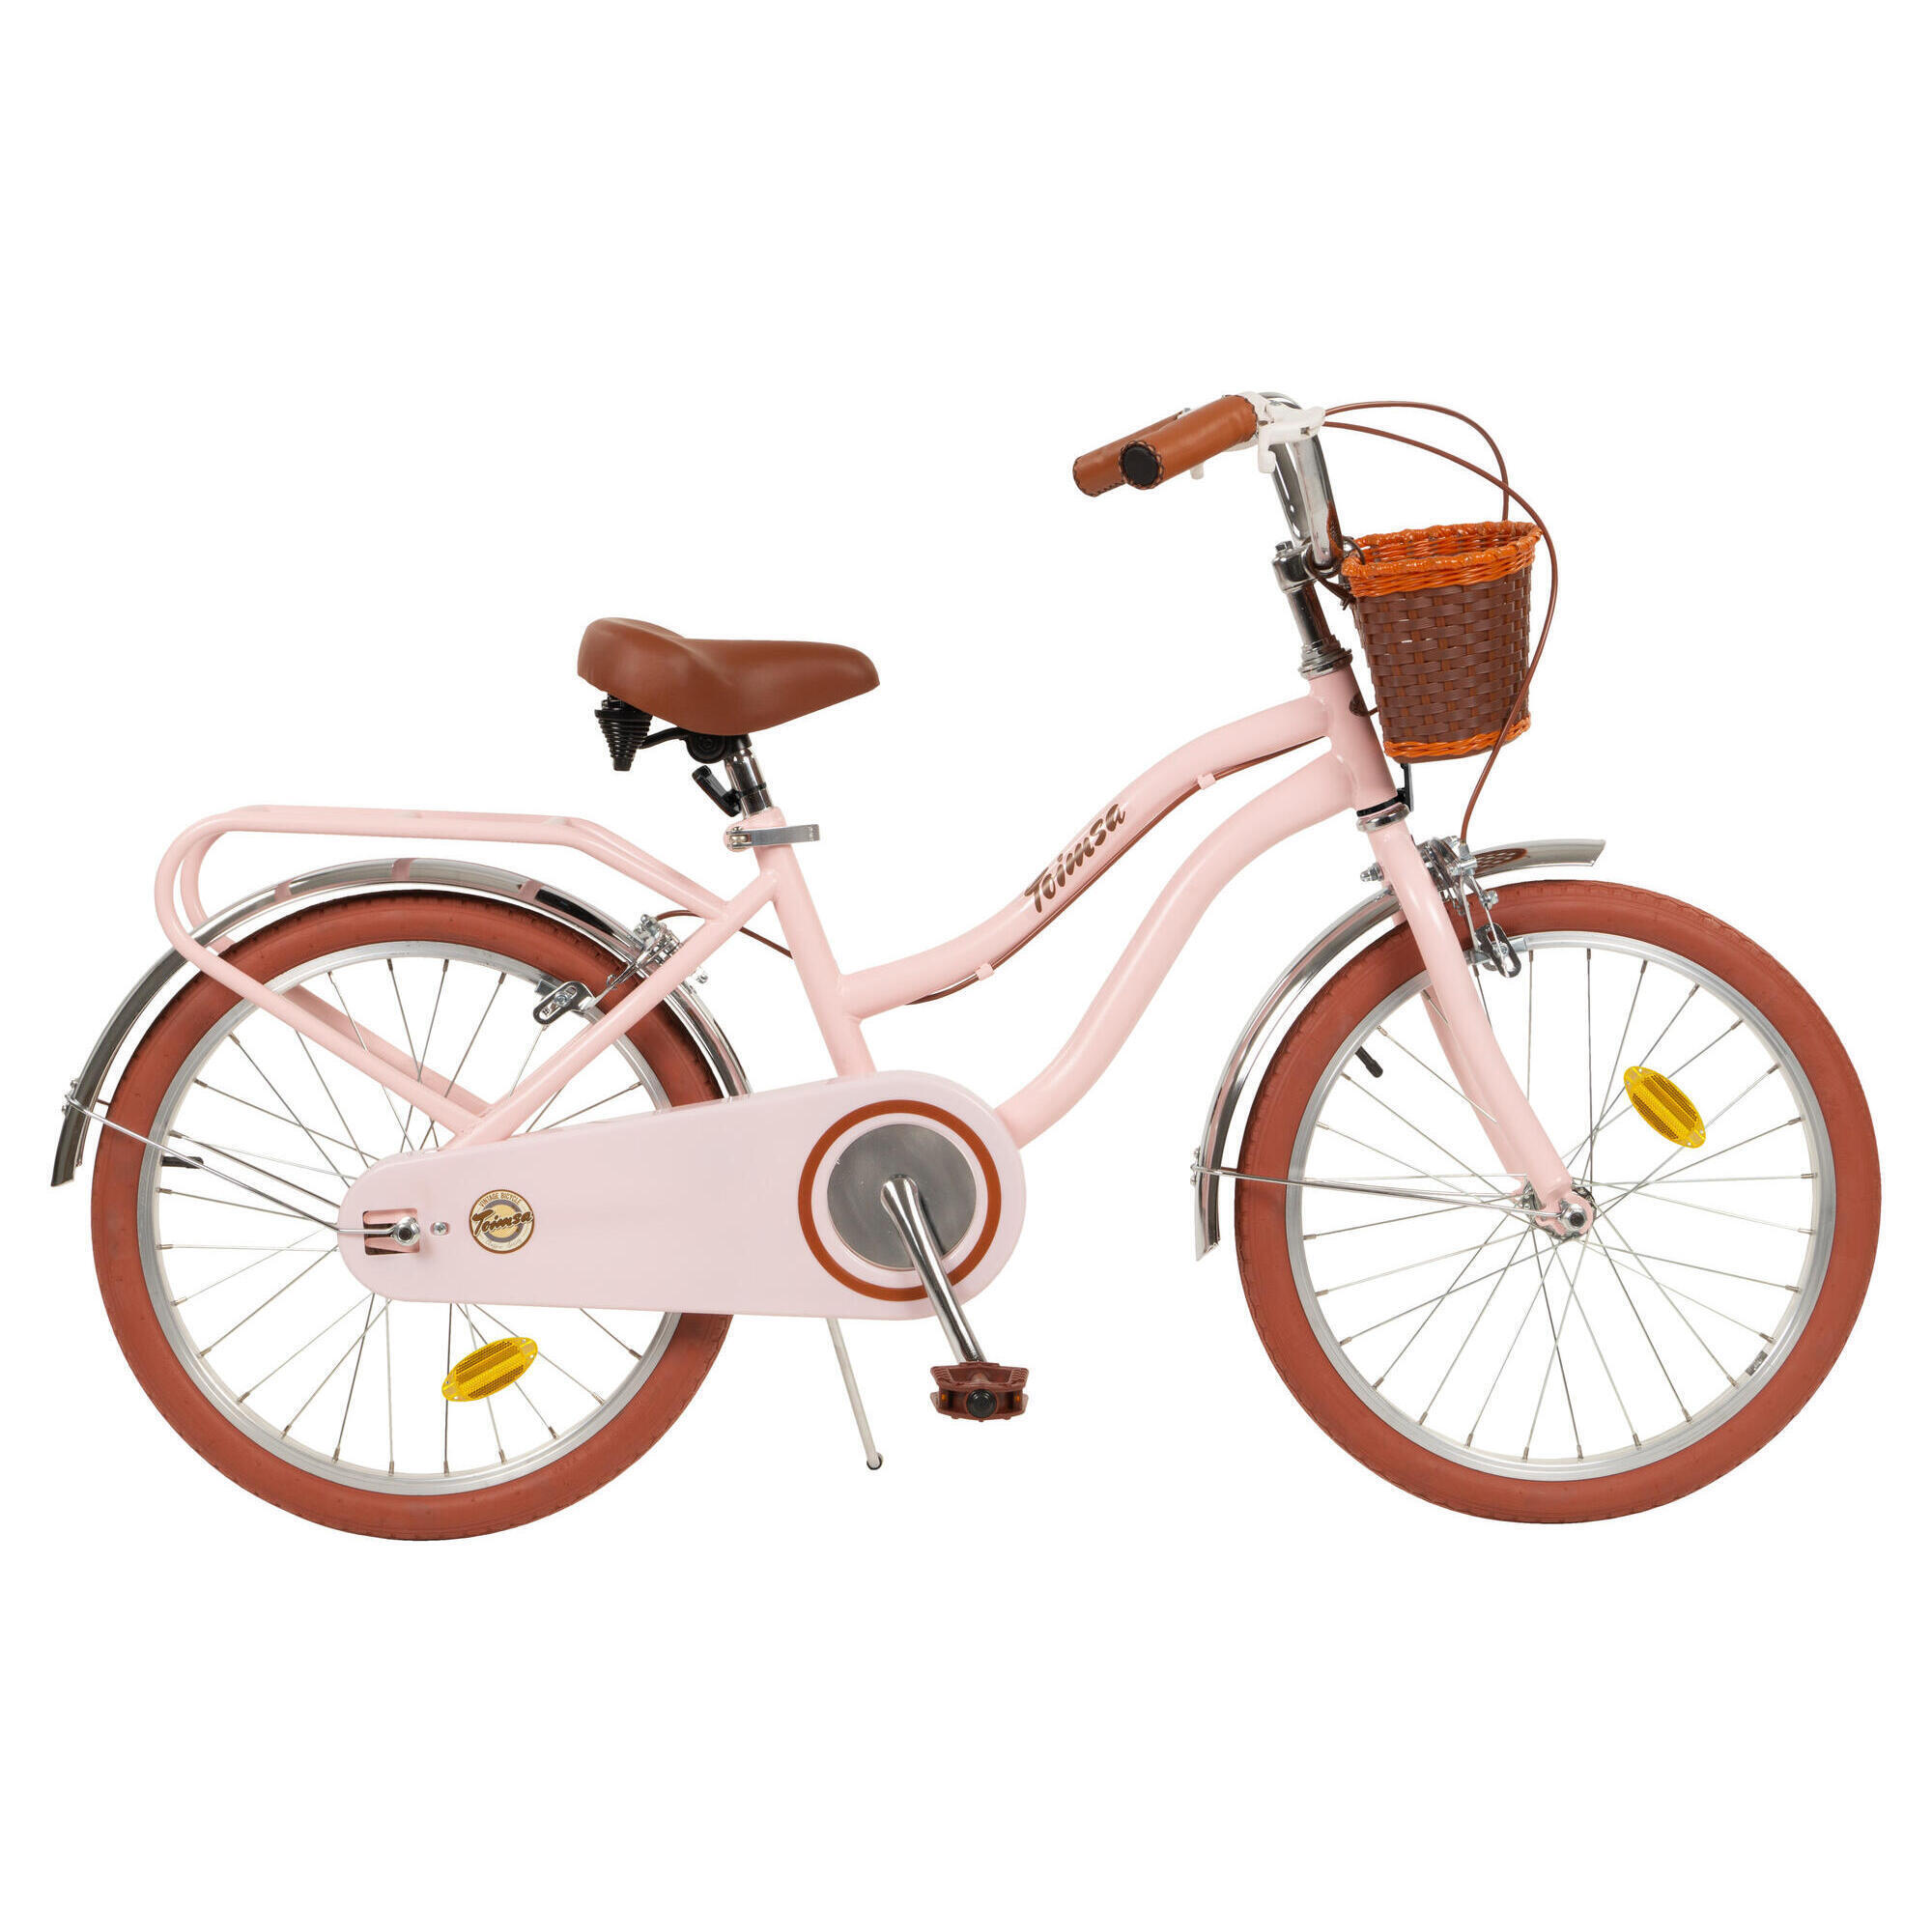 20" Vintage Bicycle - Pink 1/6